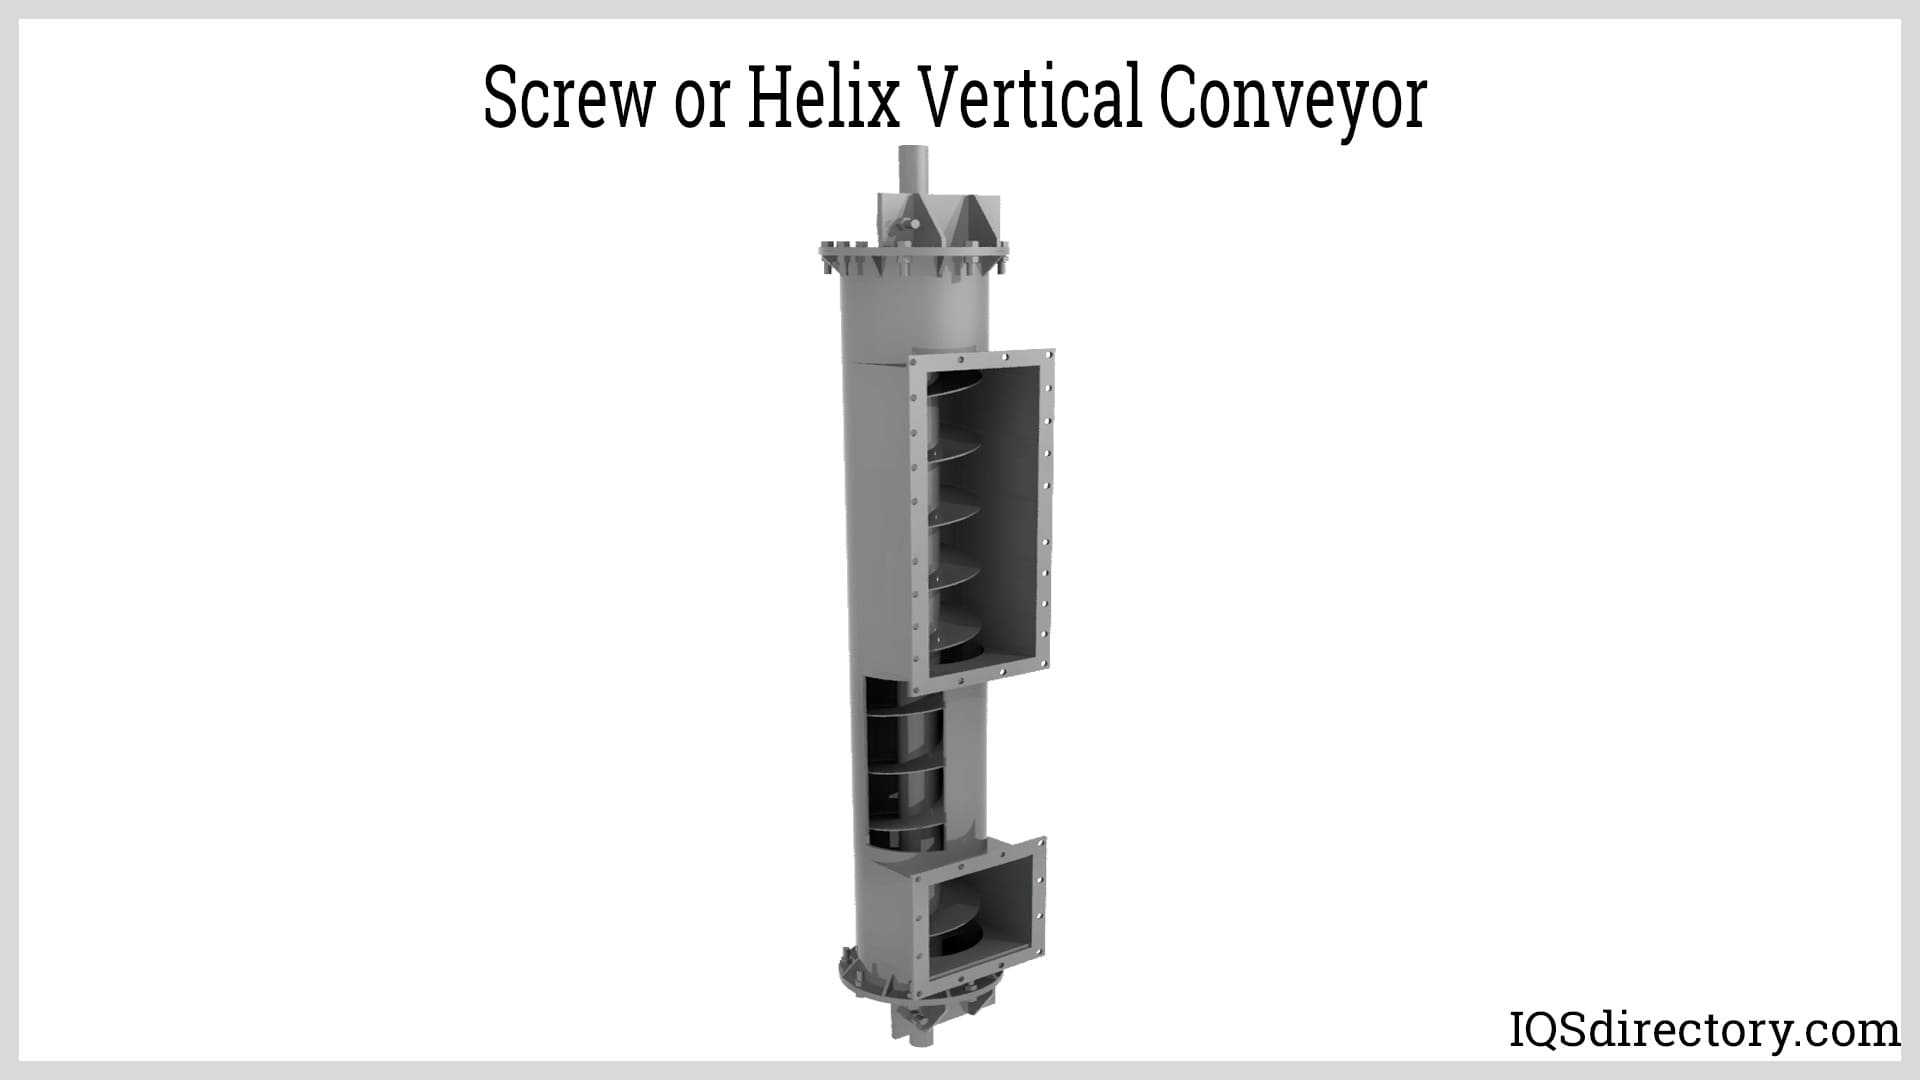 Screw or Helix Vertical Conveyor